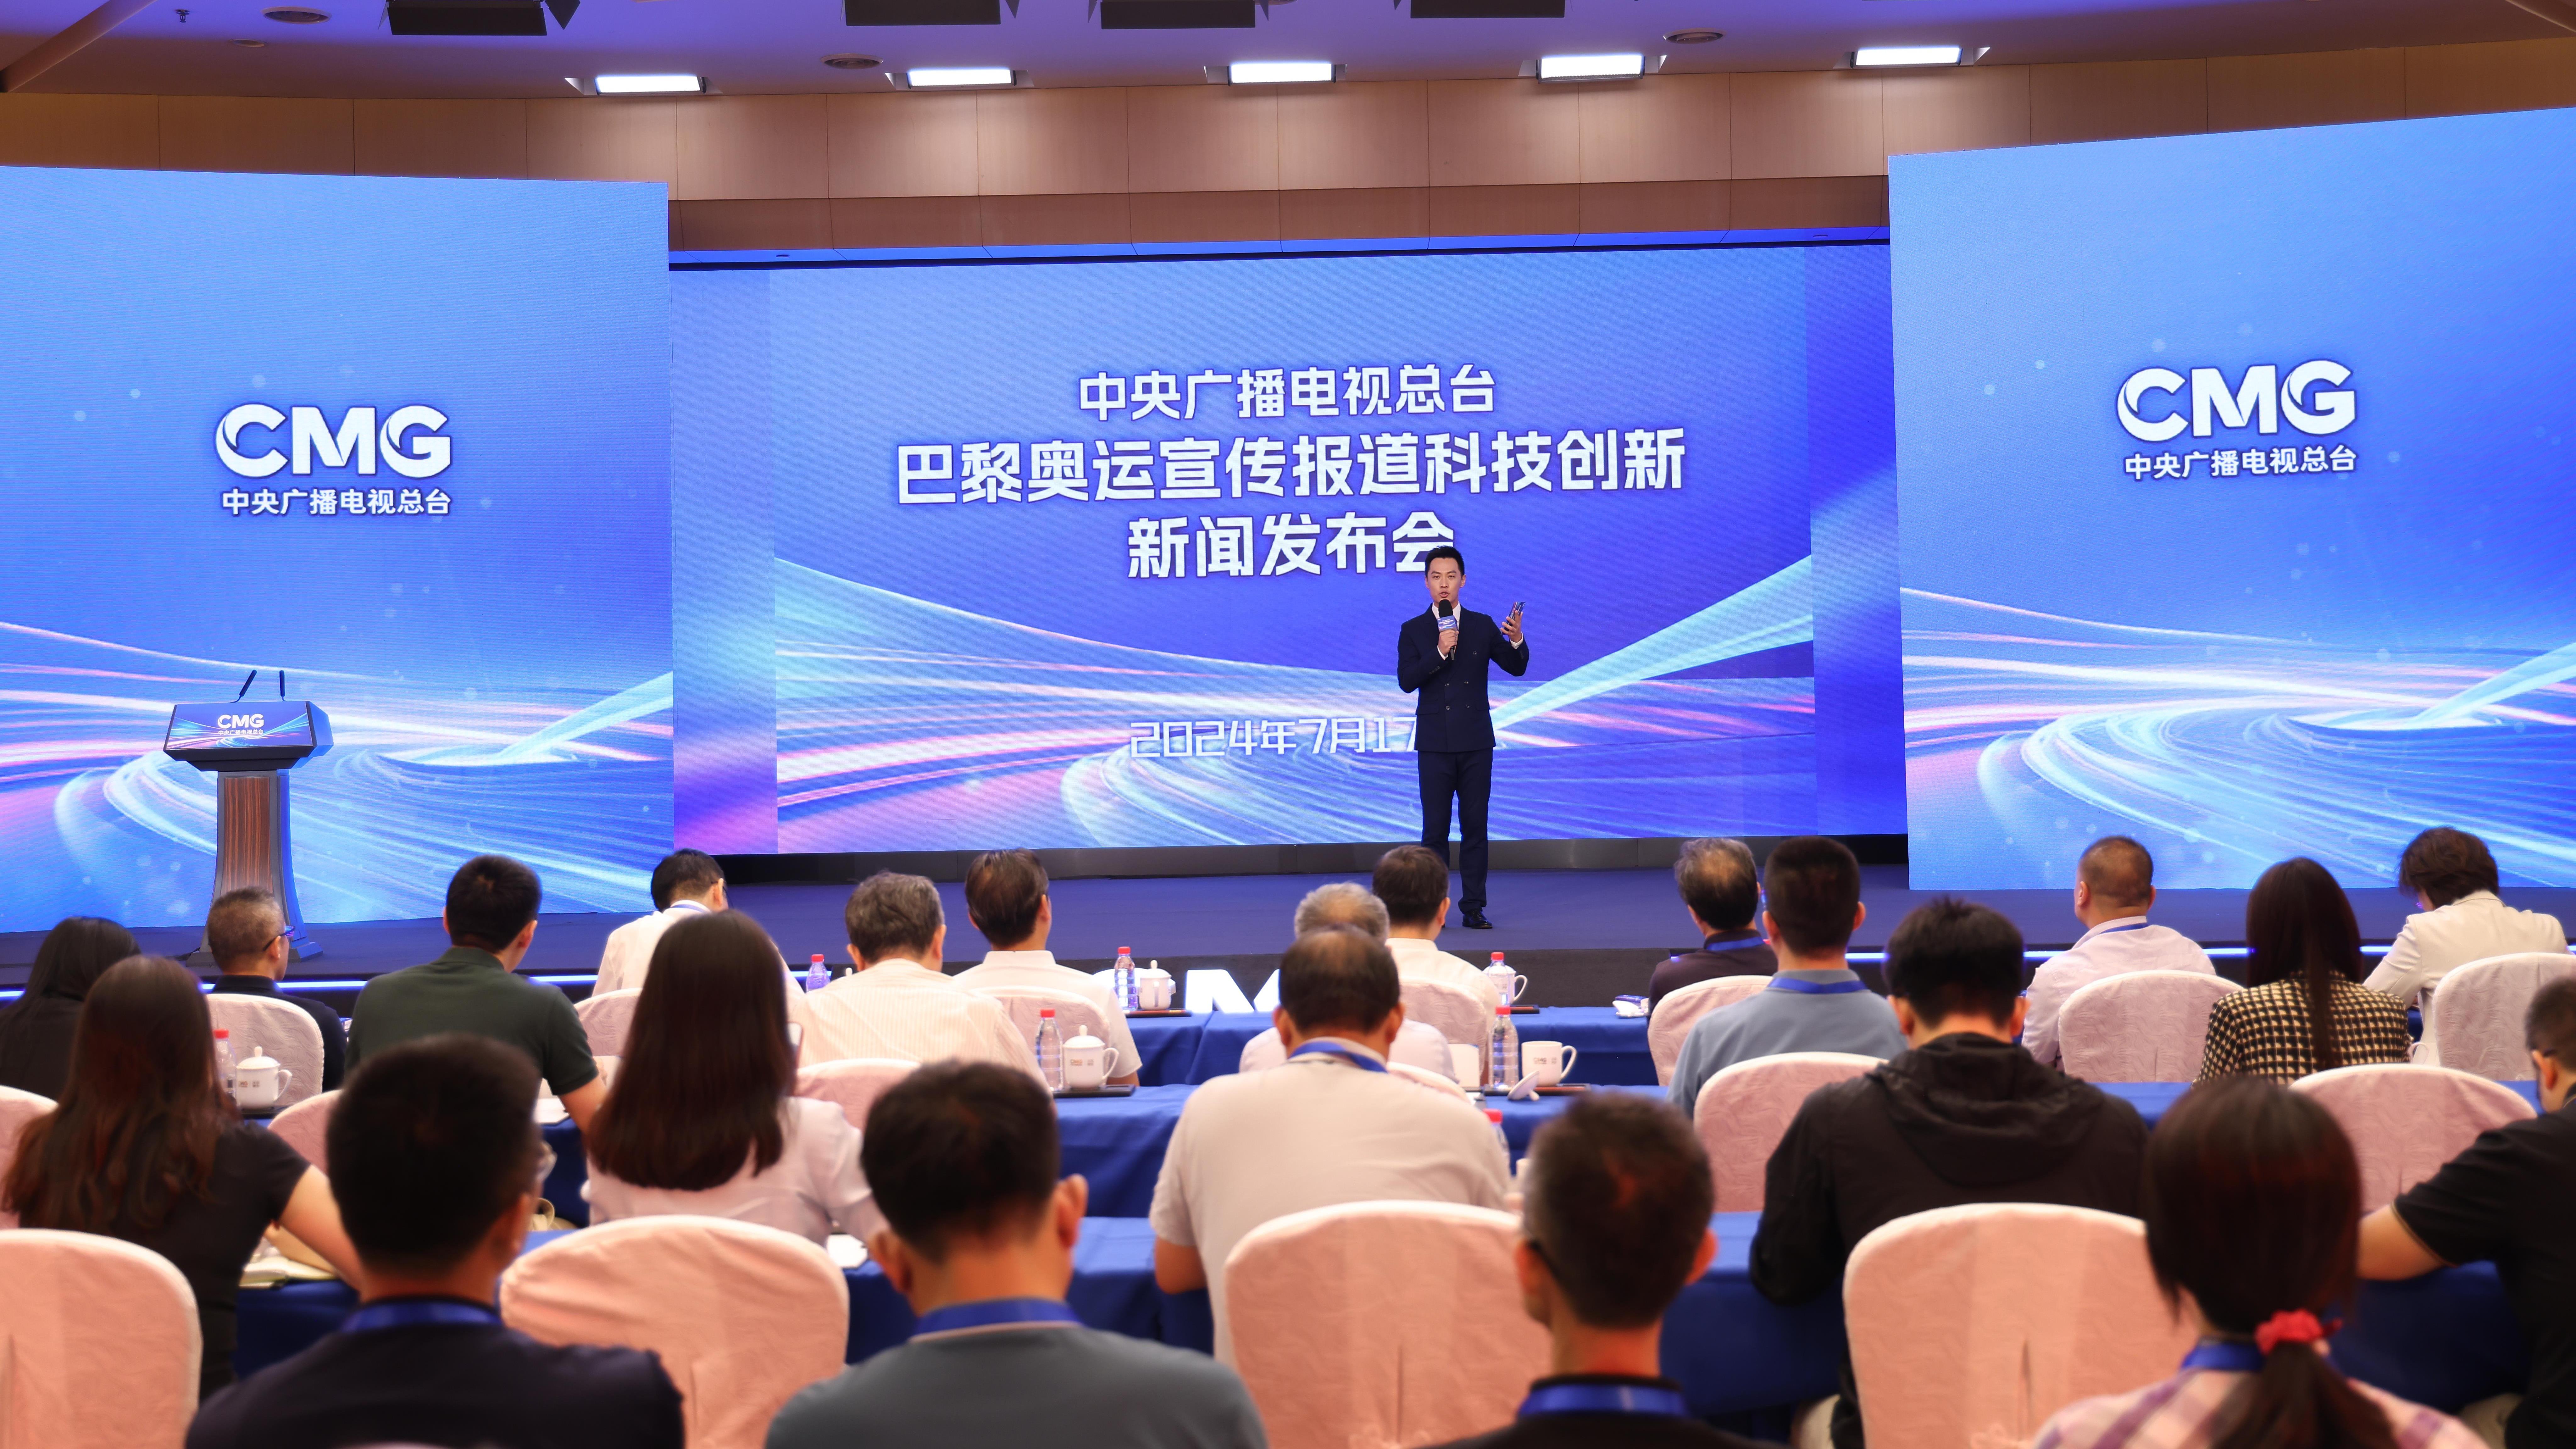 رادیو و تلویزیون مرکزی چین منتشر کرد: ده برنامه کاربردی نوآورانه علمی و فناوری برای پخش المپیک پاریسا